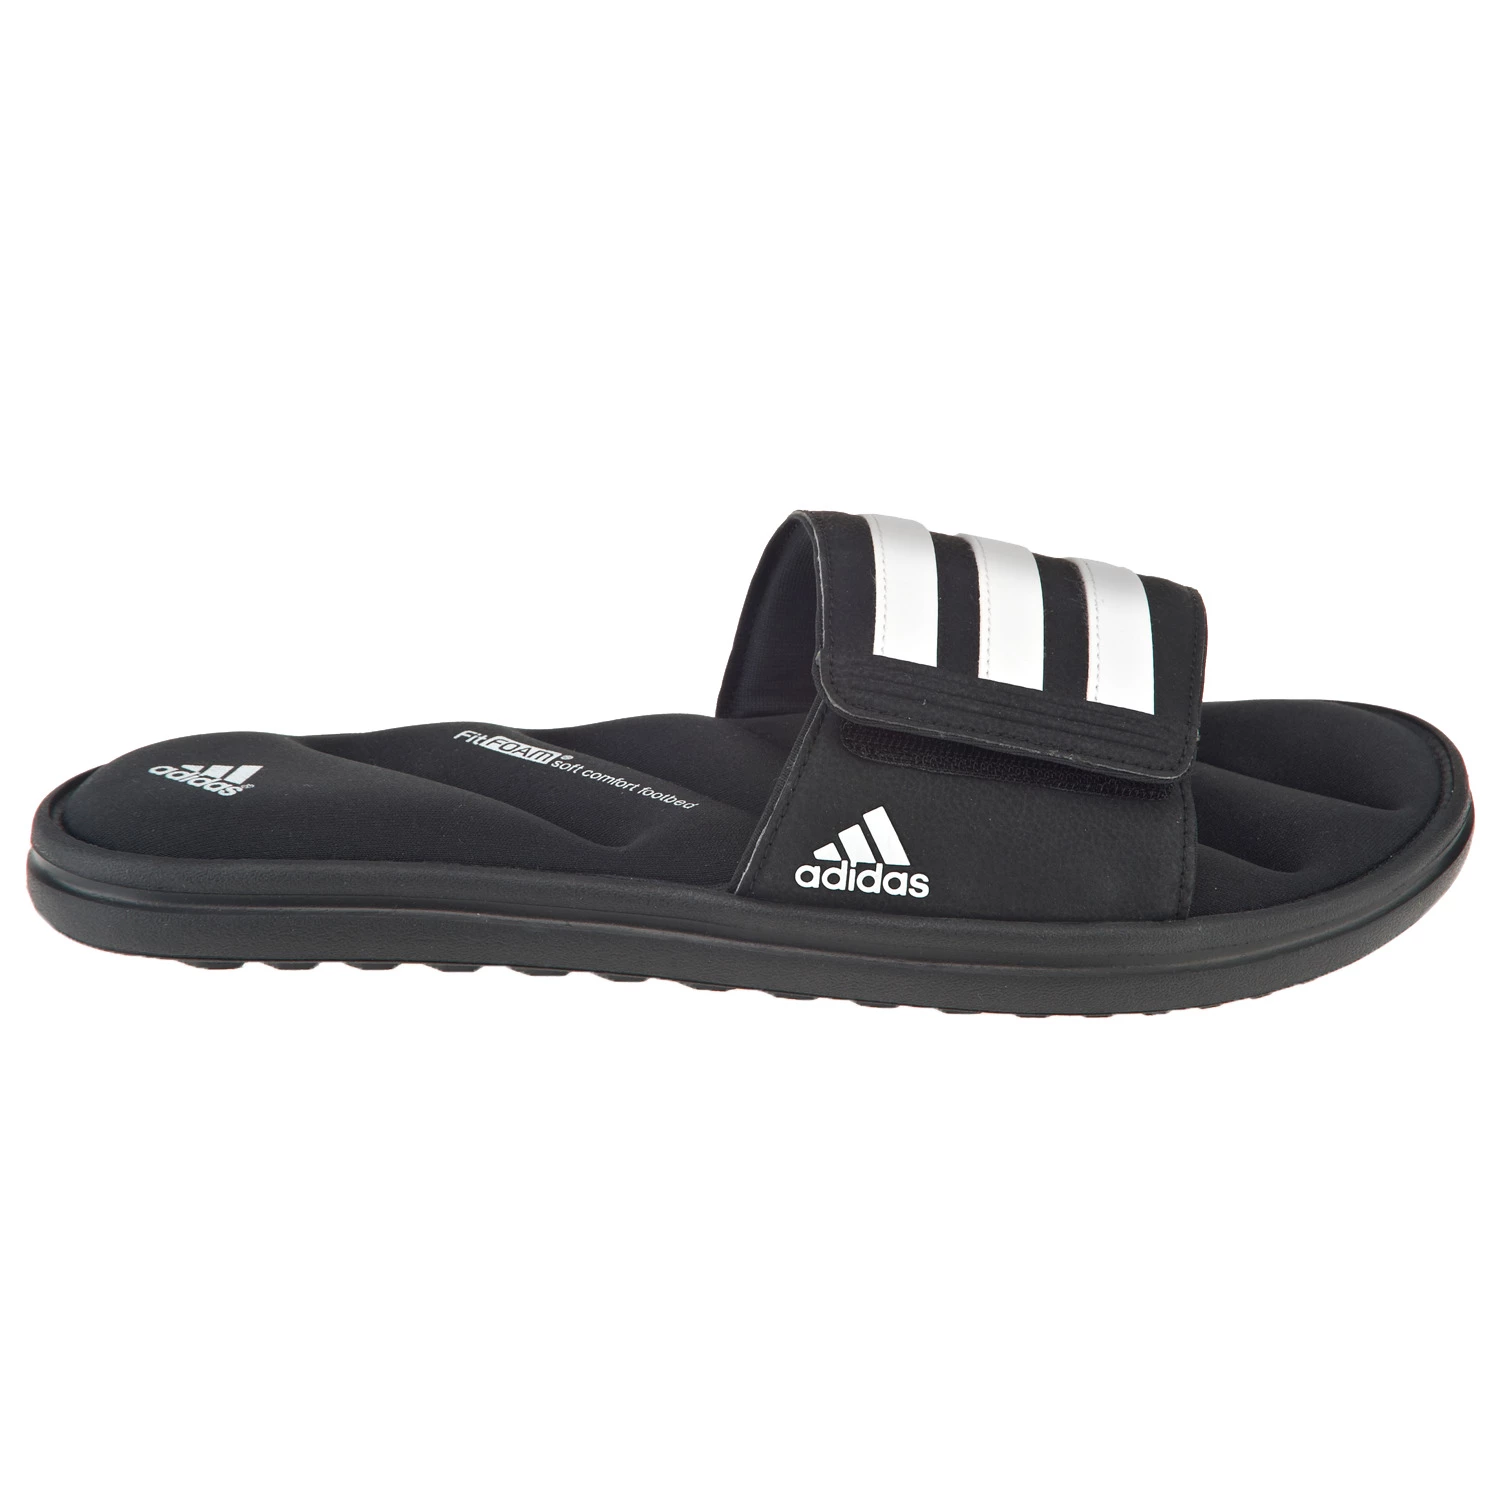 Academy - adidas Men's Zeitfrei FitFOAM Slide Sandals